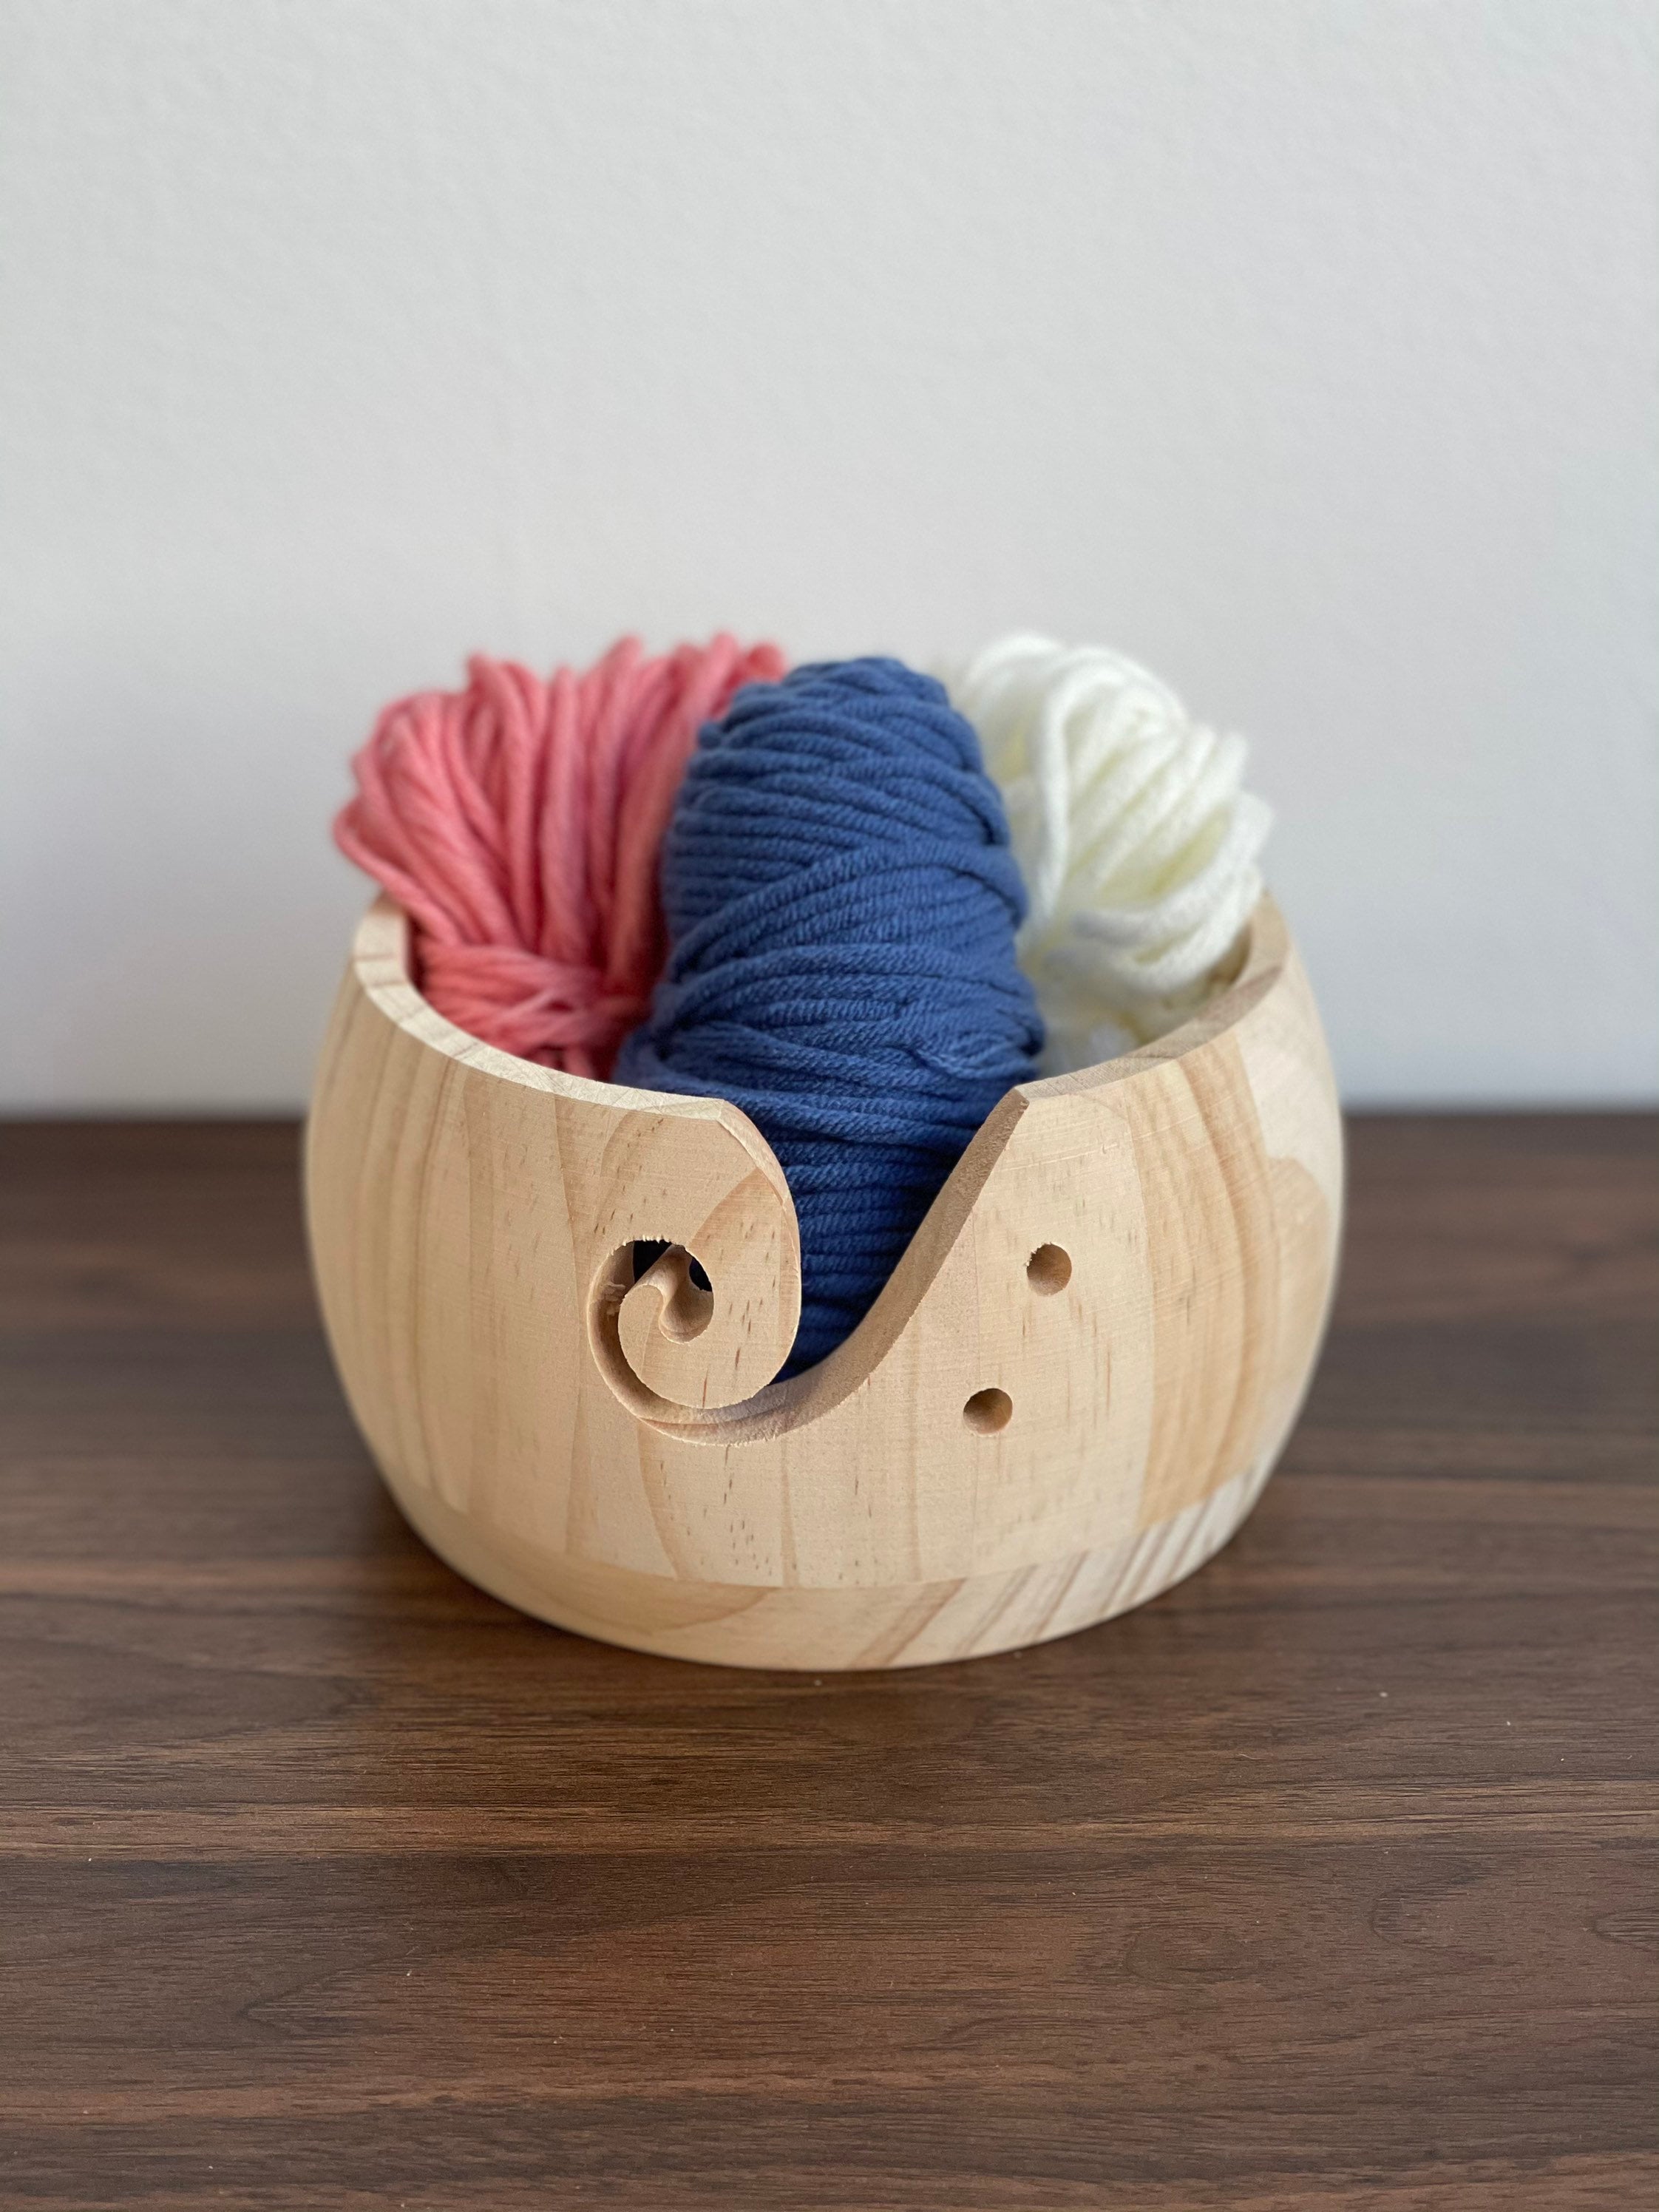 Yarn Bowls - That Yarn Place